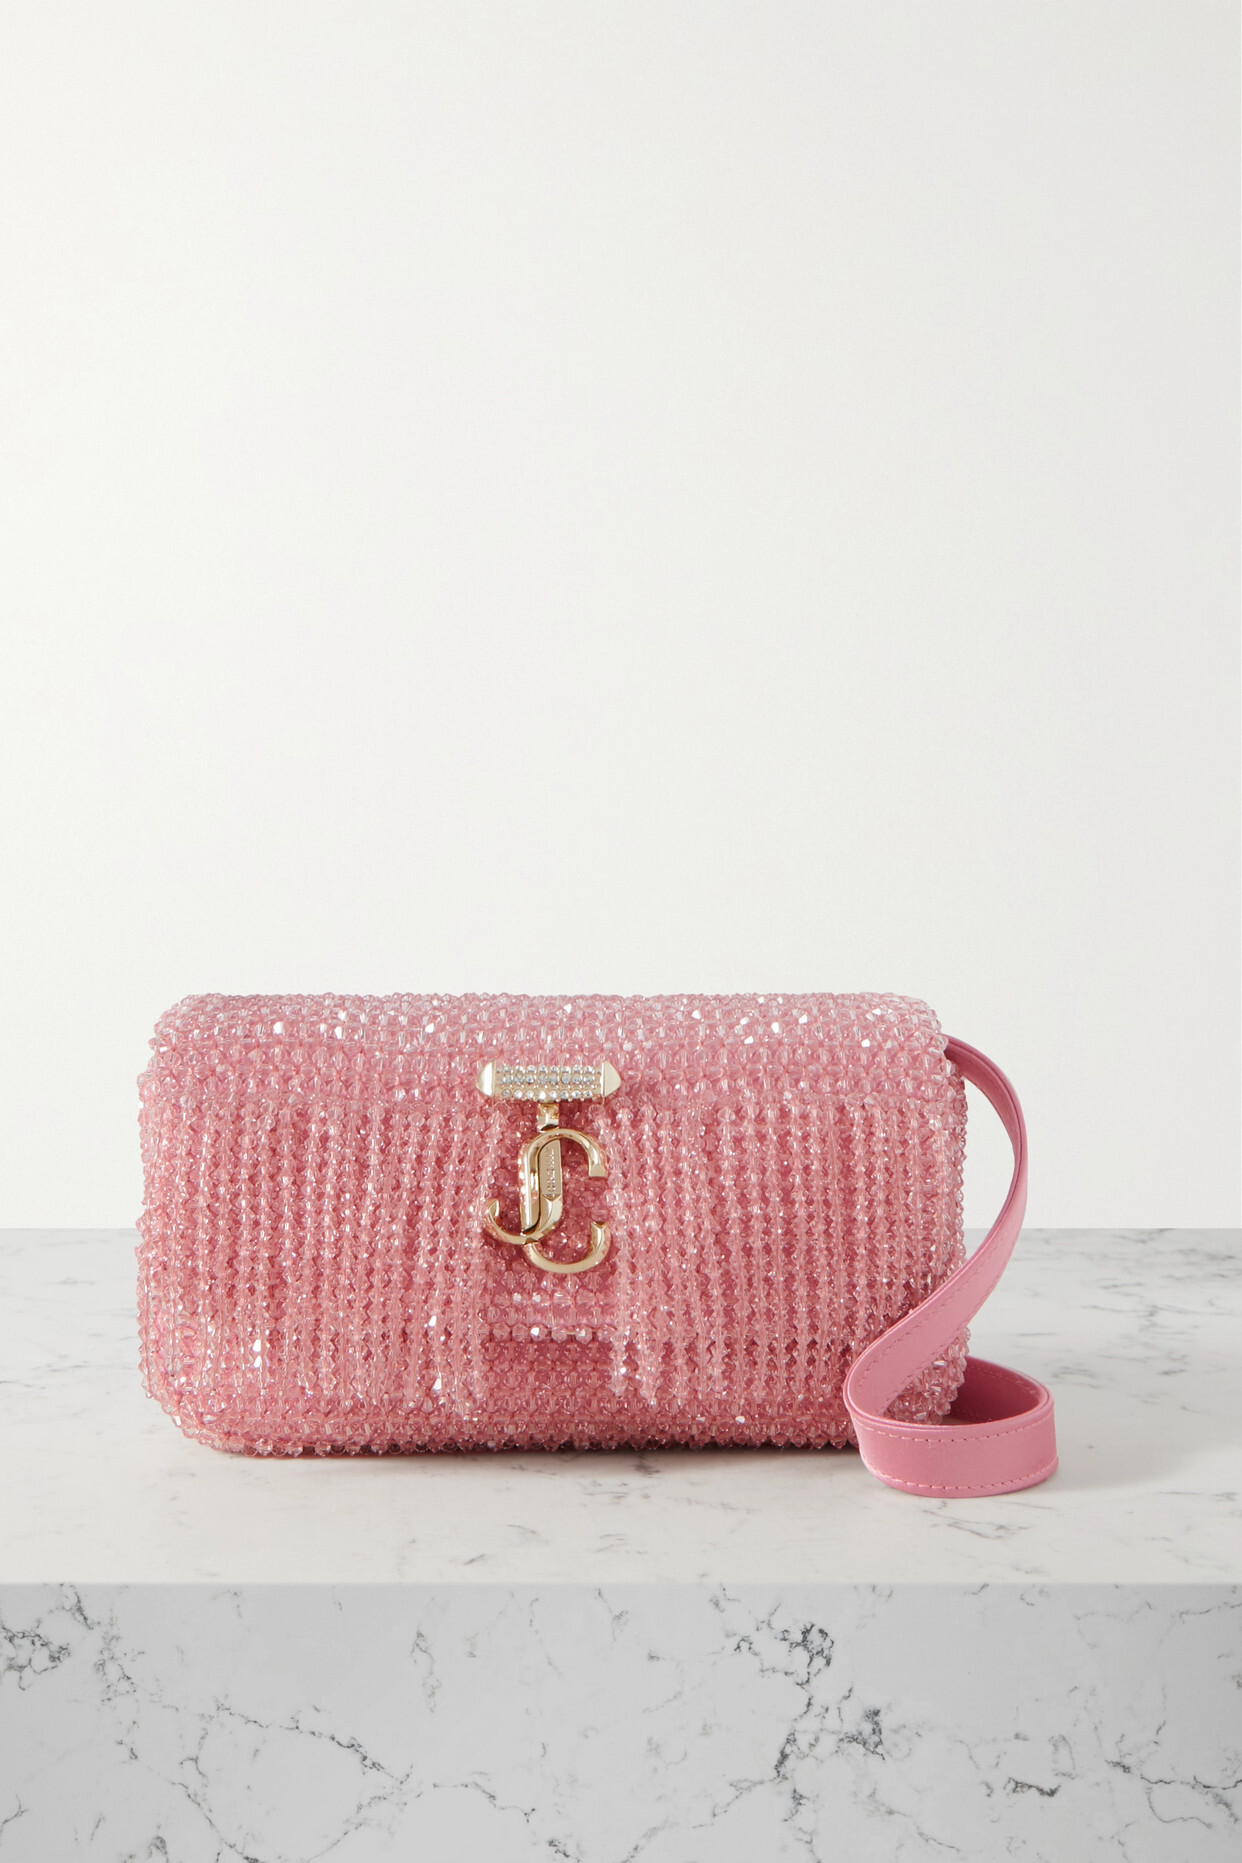 Jimmy Choo - Avenue Fringed Embellished Satin Shoulder Bag - Pink